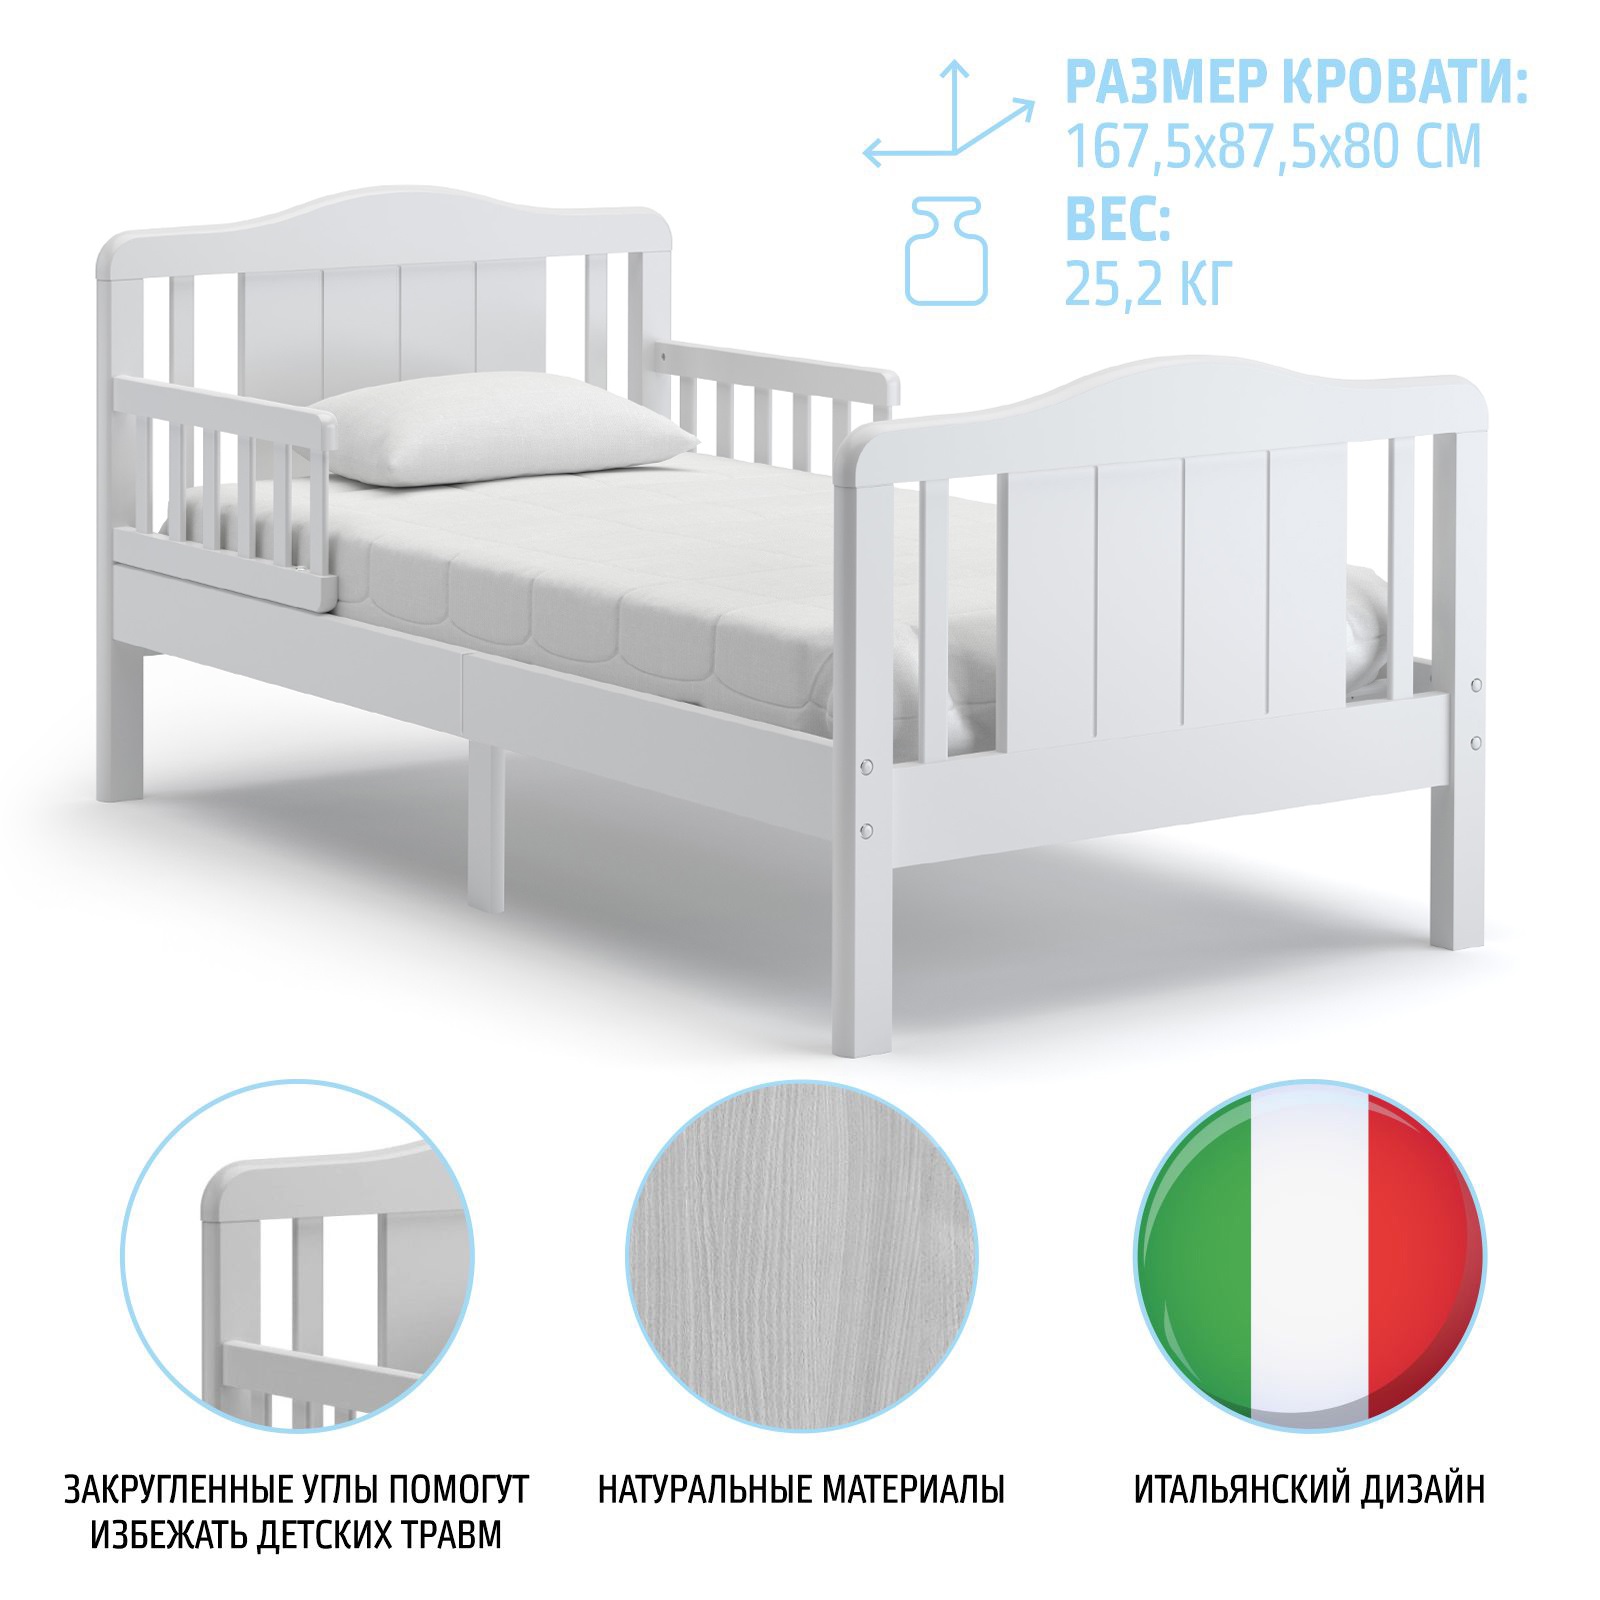 Подростковая кровать Nuovita Volo, цвет - Sbiancato / Отбеленный  